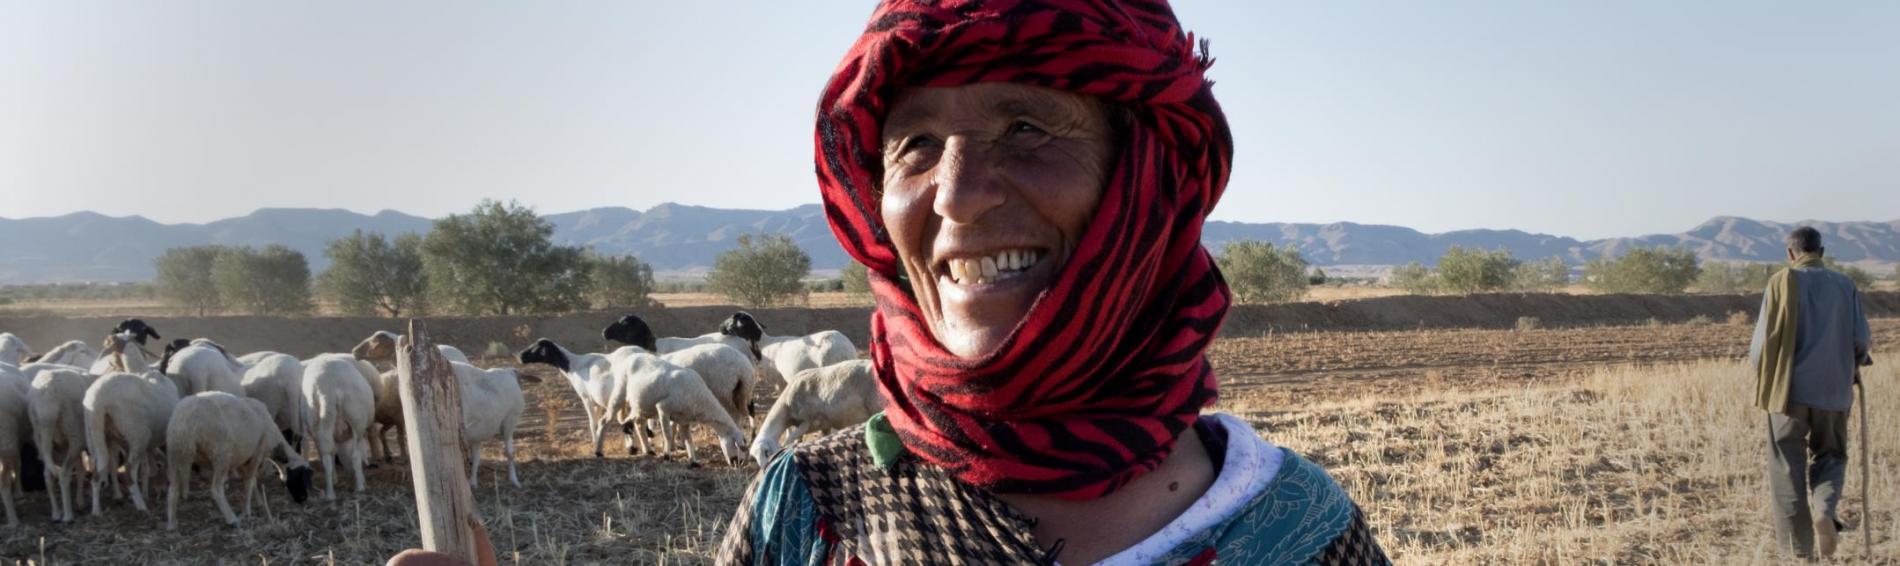 Dans les terres tunisiennes, une dame, protégée du soleil par un turban, sourit à l'objectif. Elle tient un baton à la main et se tient à côté de son troupeau, au milieu d'un champ.